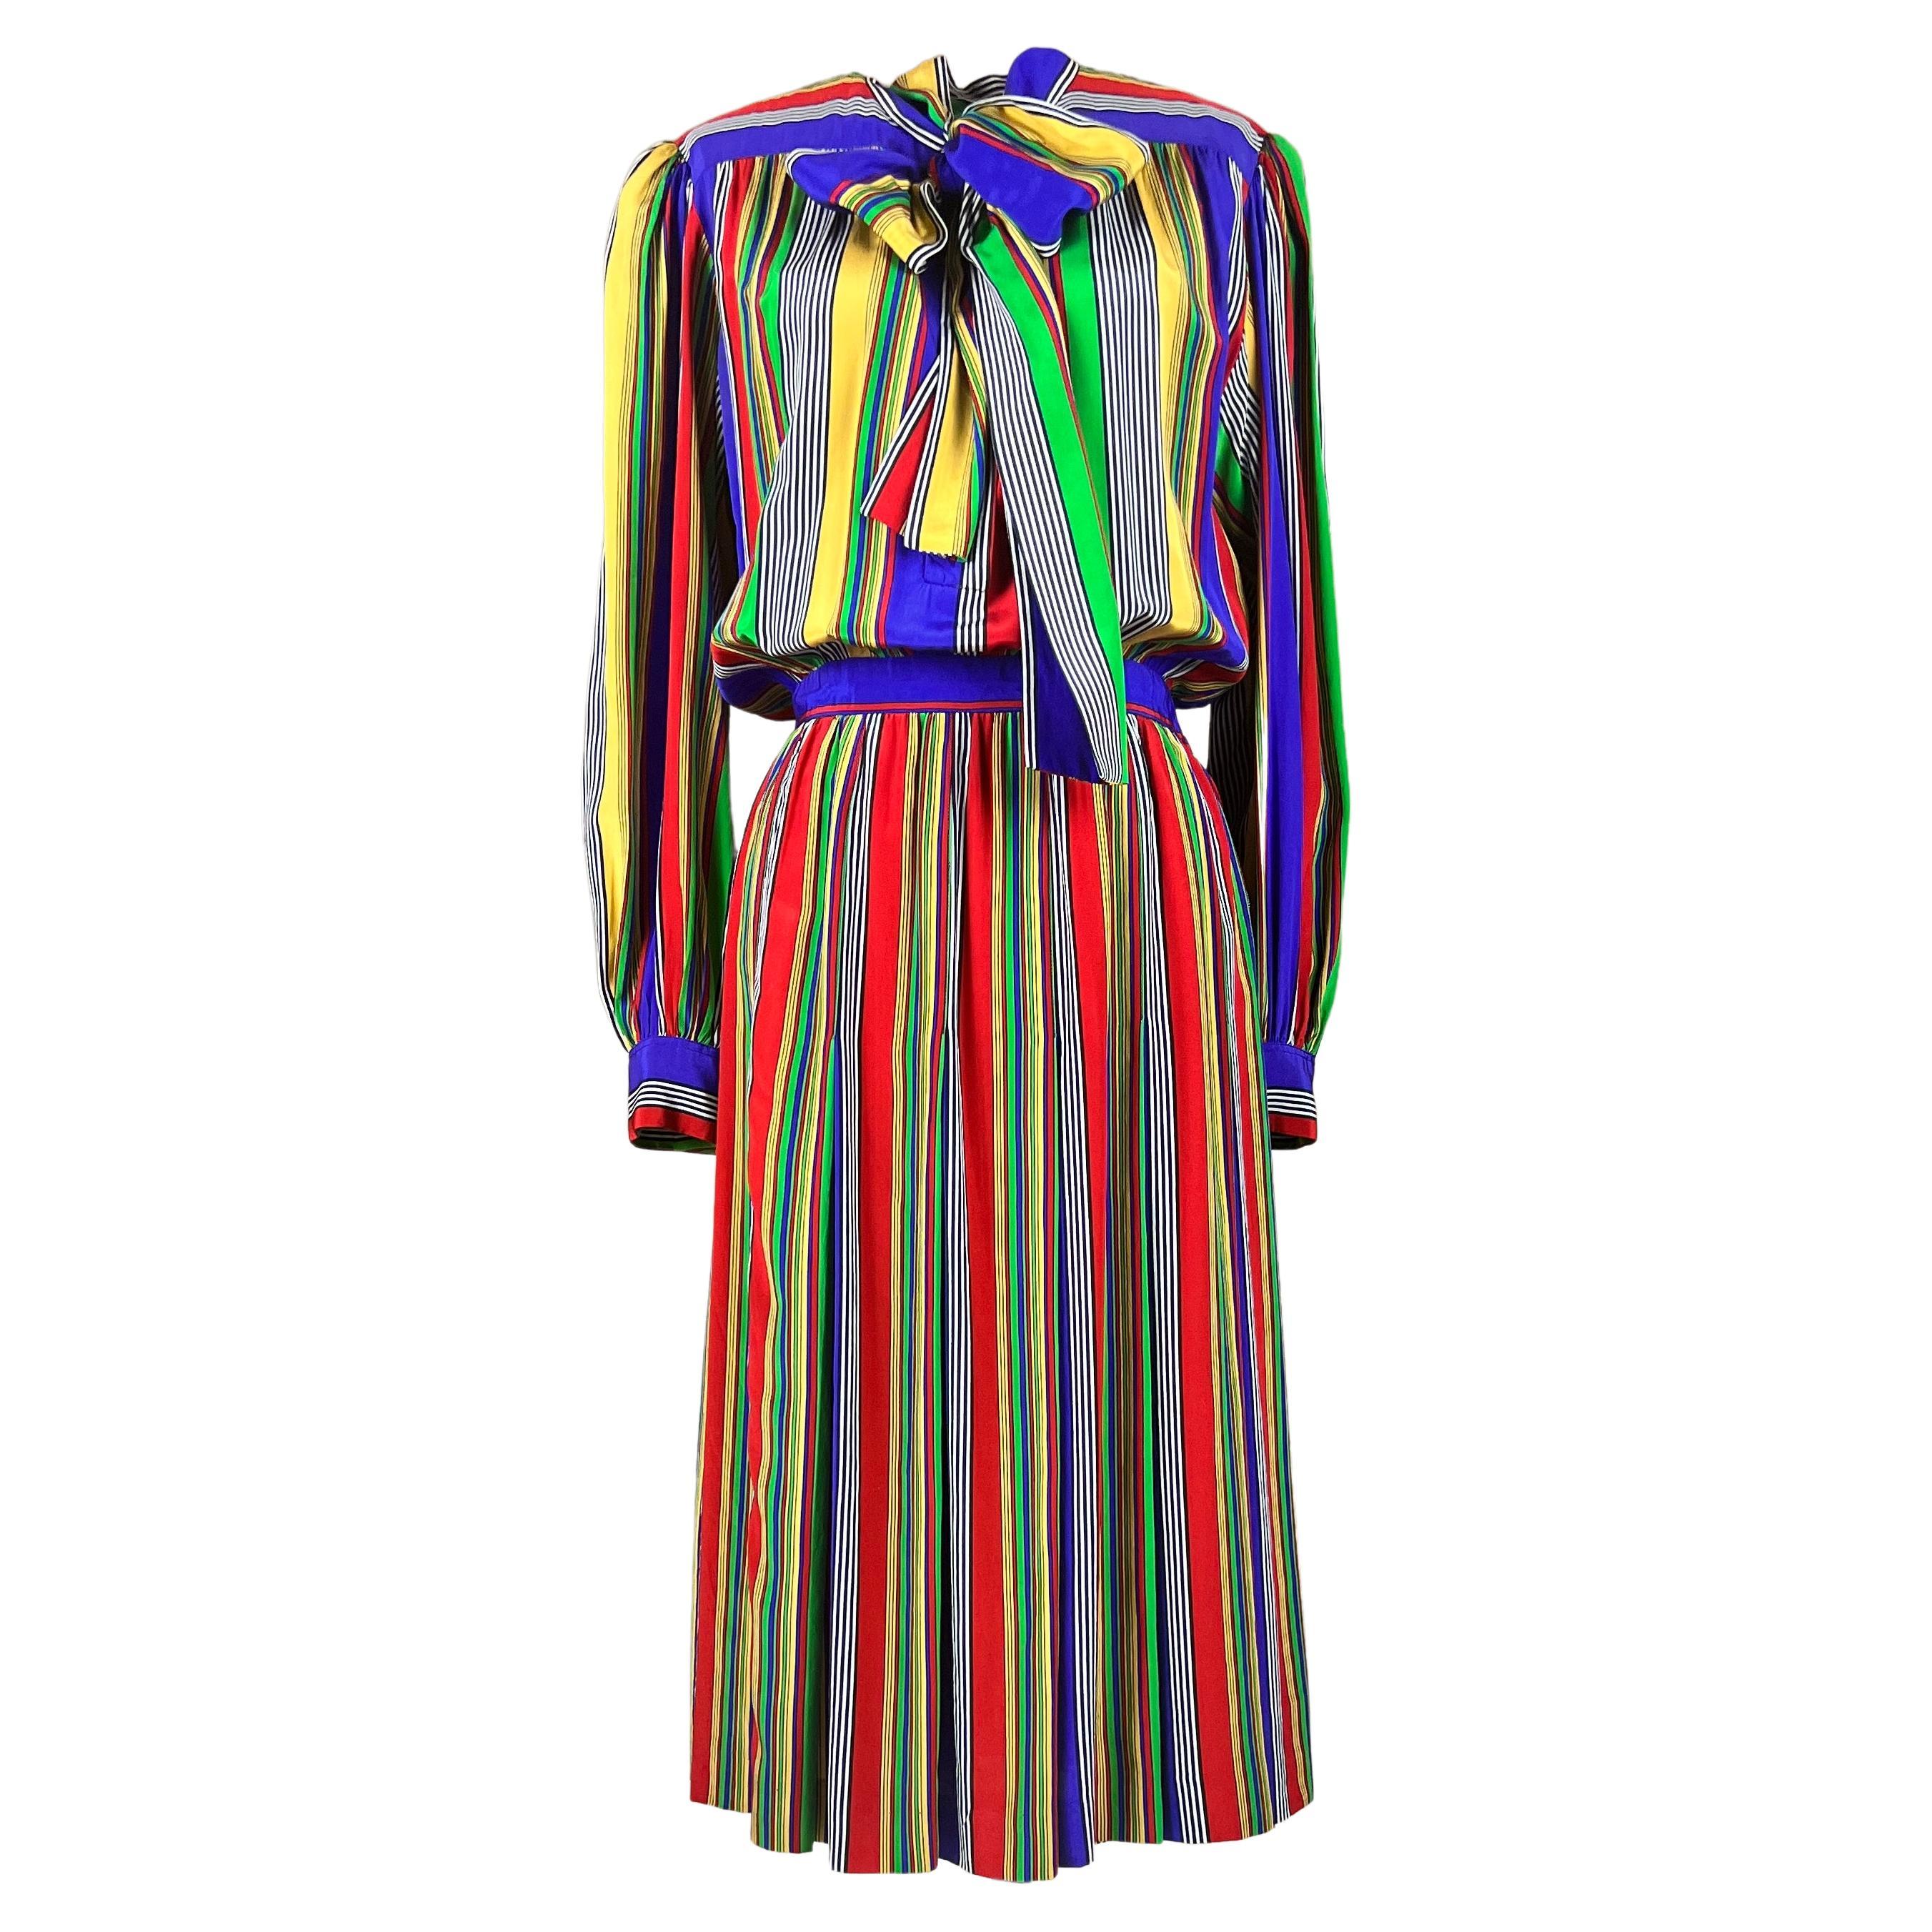 Dokumentiertes mehrfarbig gestreiftes Kleid von Yves Saint Laurent, 1982